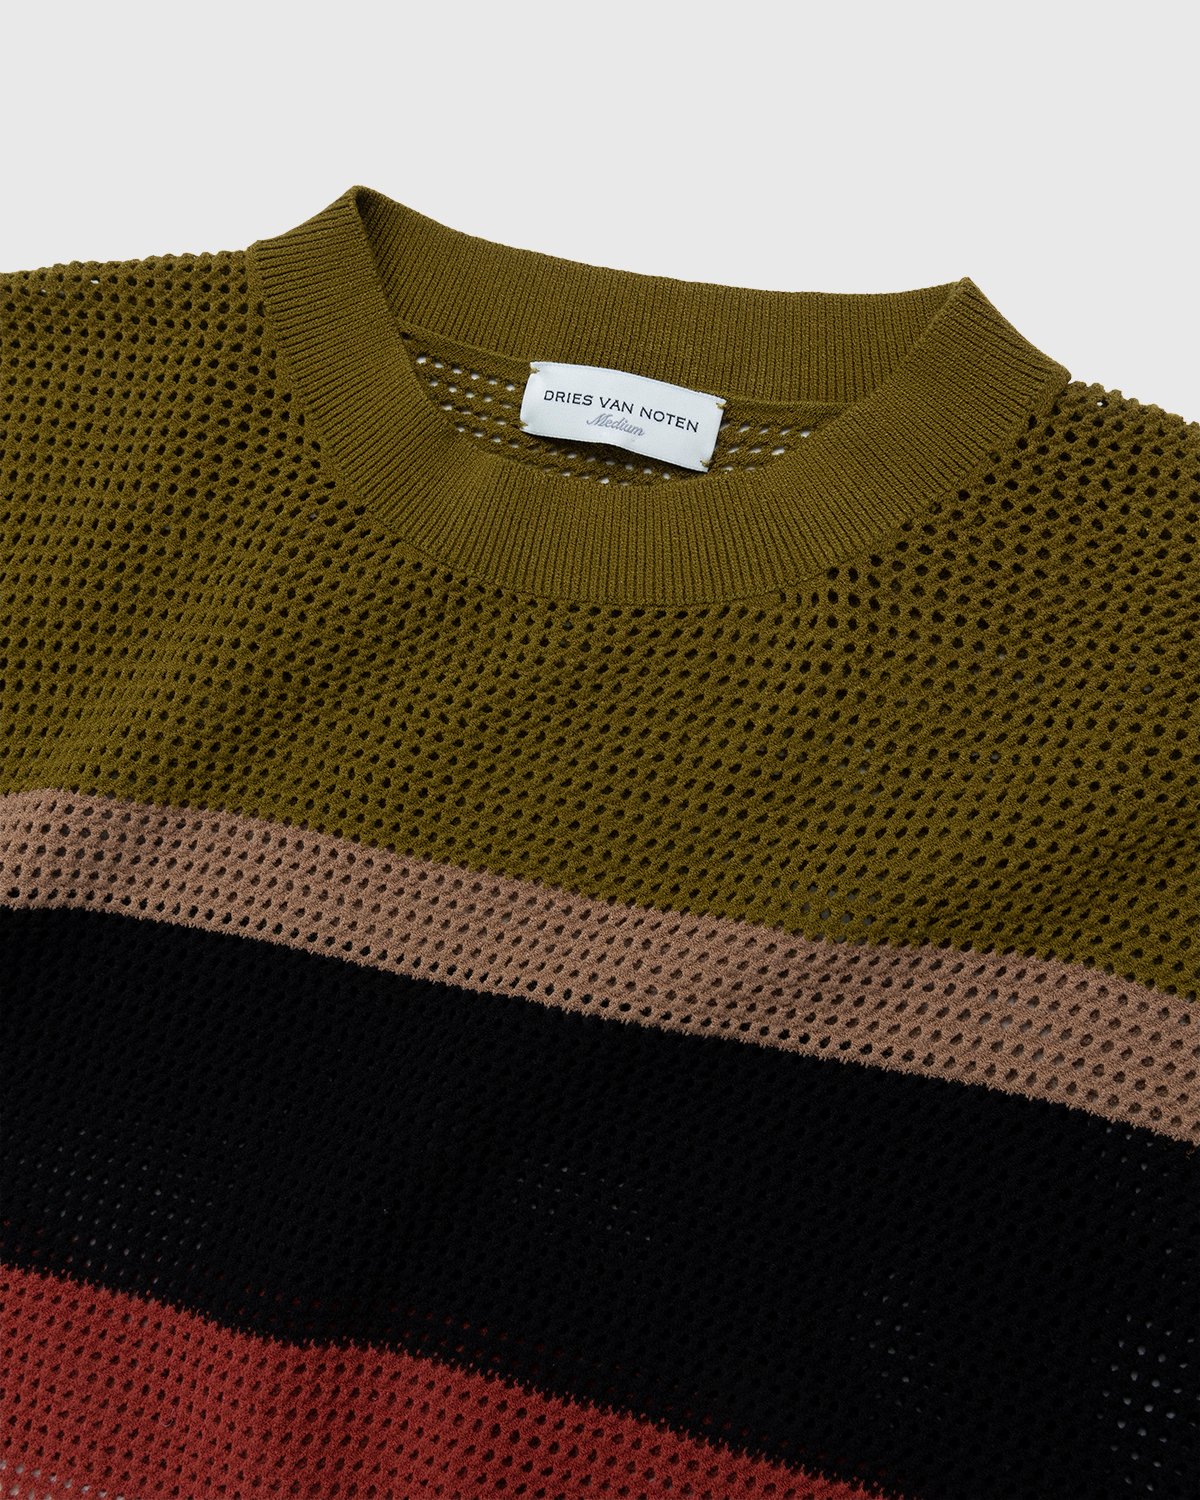 Dries van Noten - Jacobus Knit Sweater Ecru - Clothing - Beige - Image 4